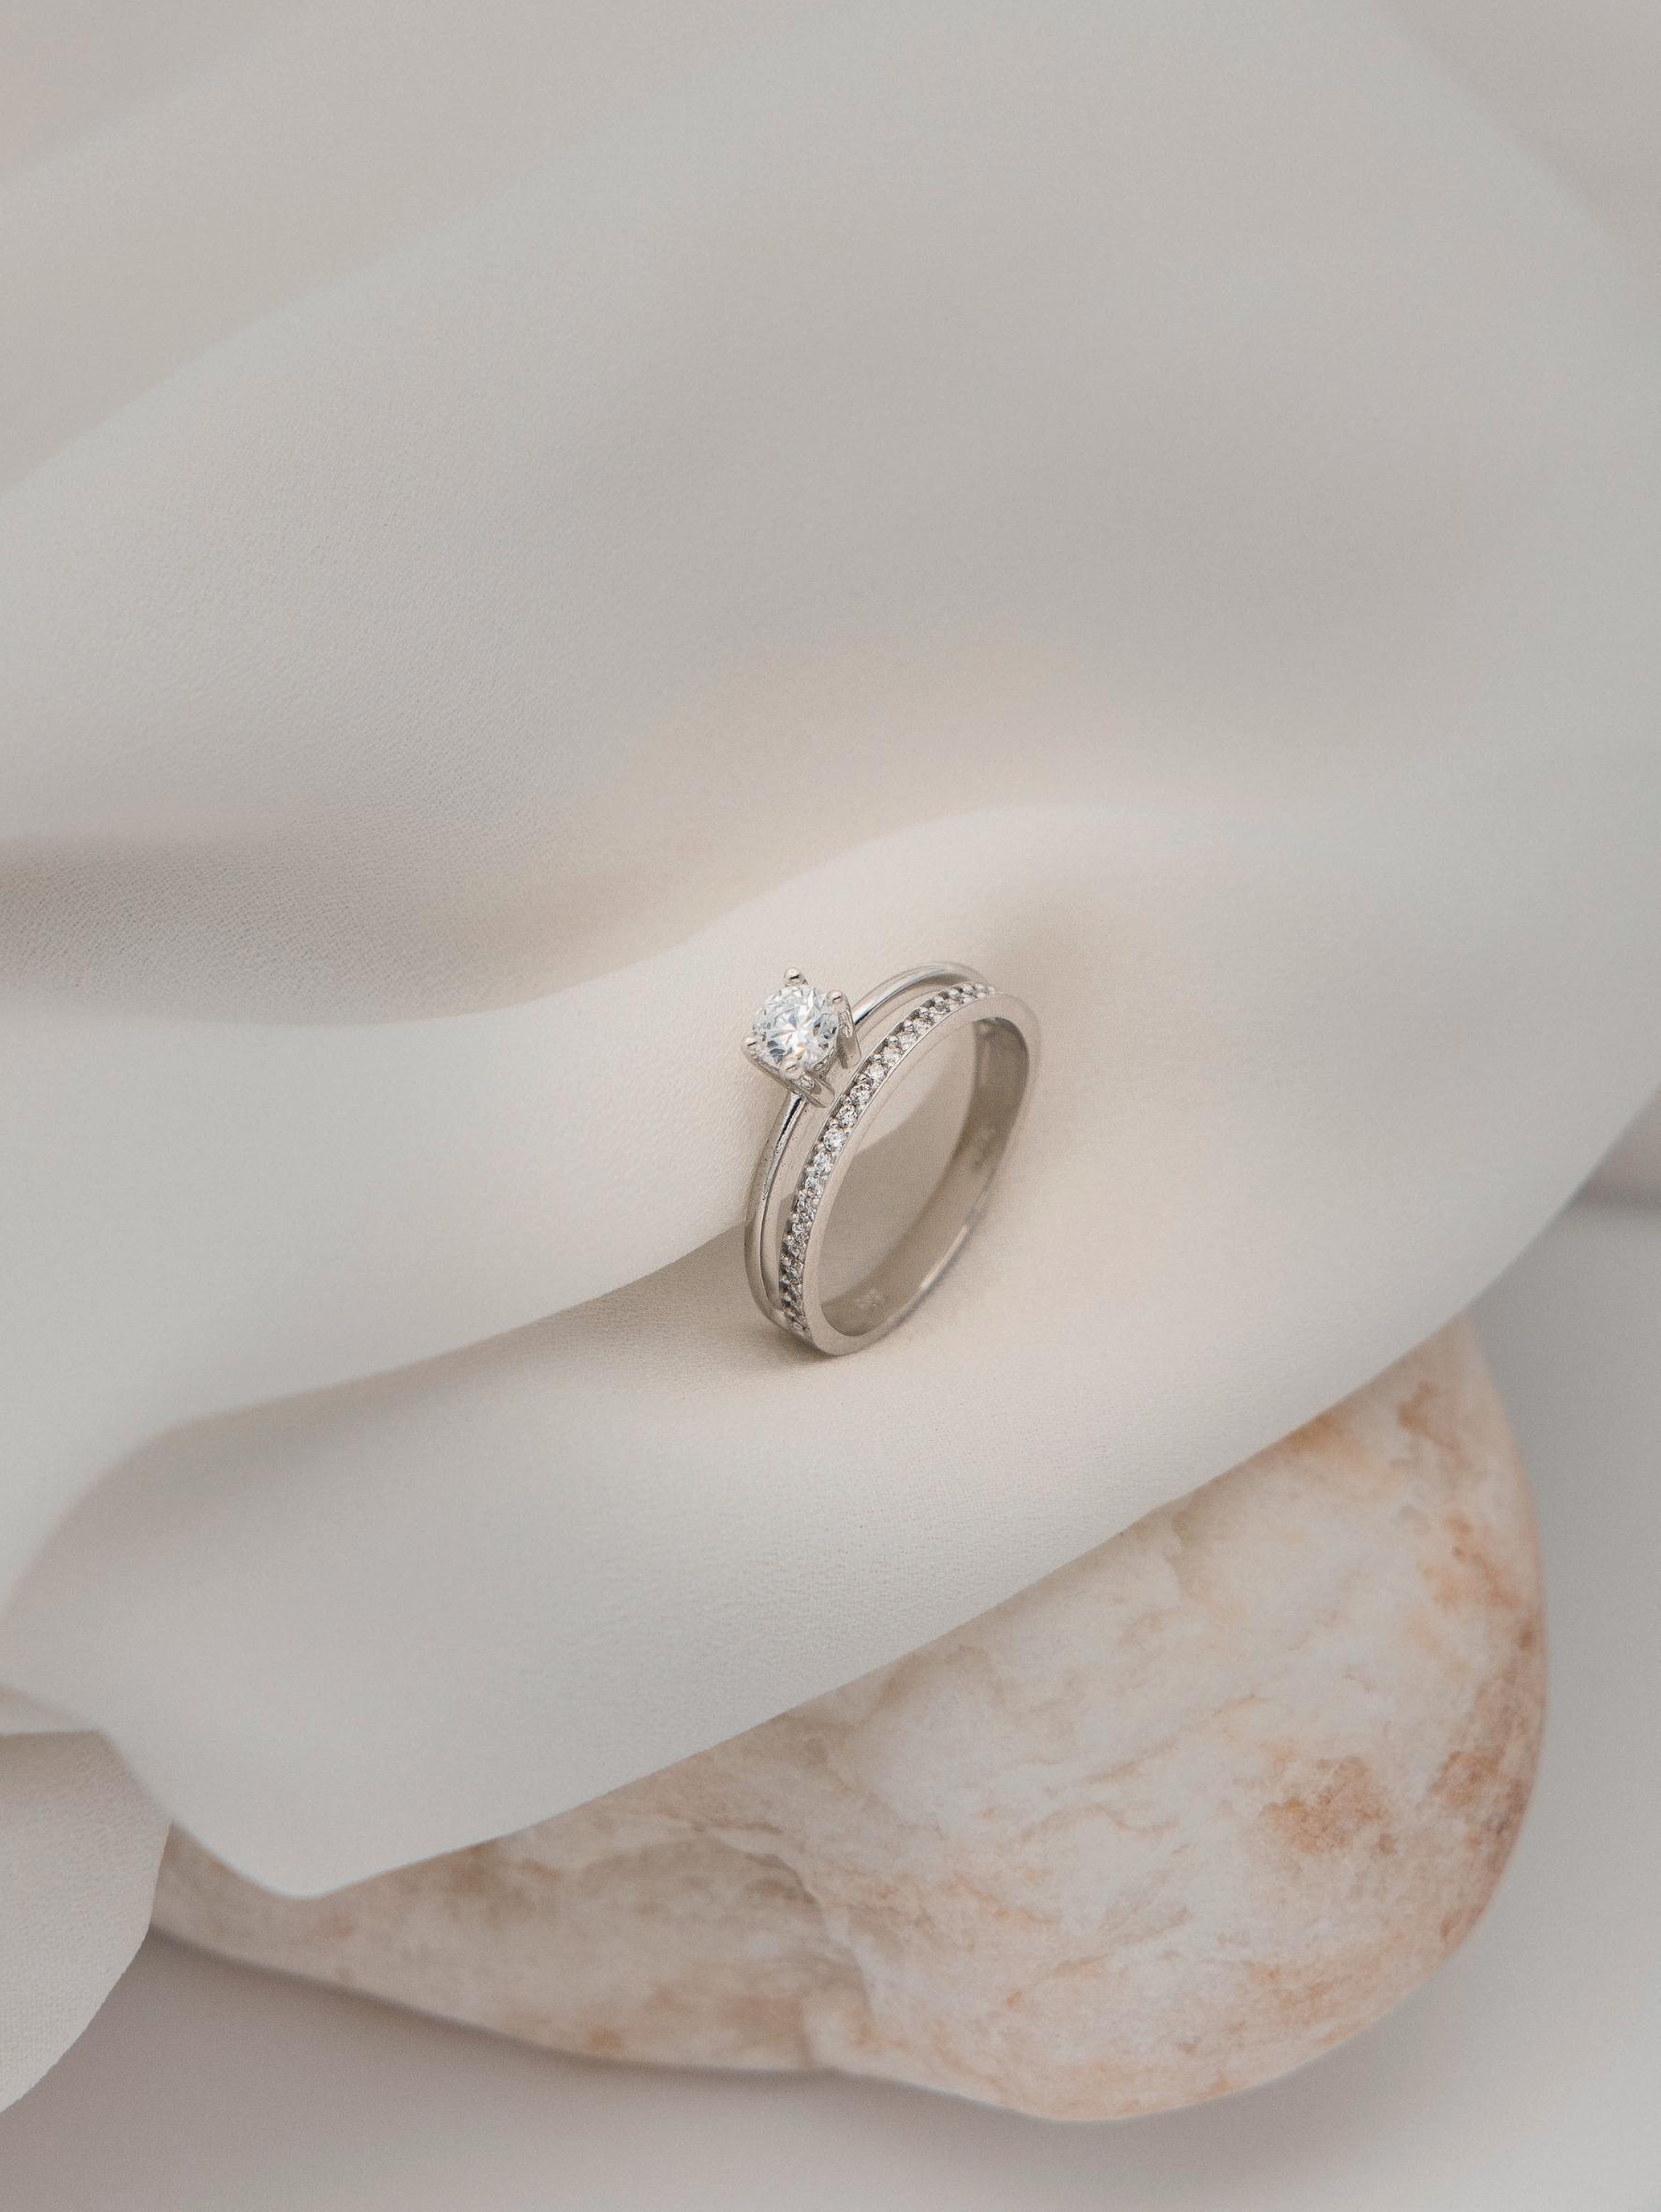 Μονόπετρο δαχτυλίδι γάμου με διαμάντι, που συνδυάζει ένα δαχτυλίδι σειρέ με διαμάντια δίνοντας την αίσθηση διπλού δαχτυλιδιού, κατασκευασμένο από λευκόχρυσο, τοποθετημένο επάνω σε λευκό ύφασμα. 